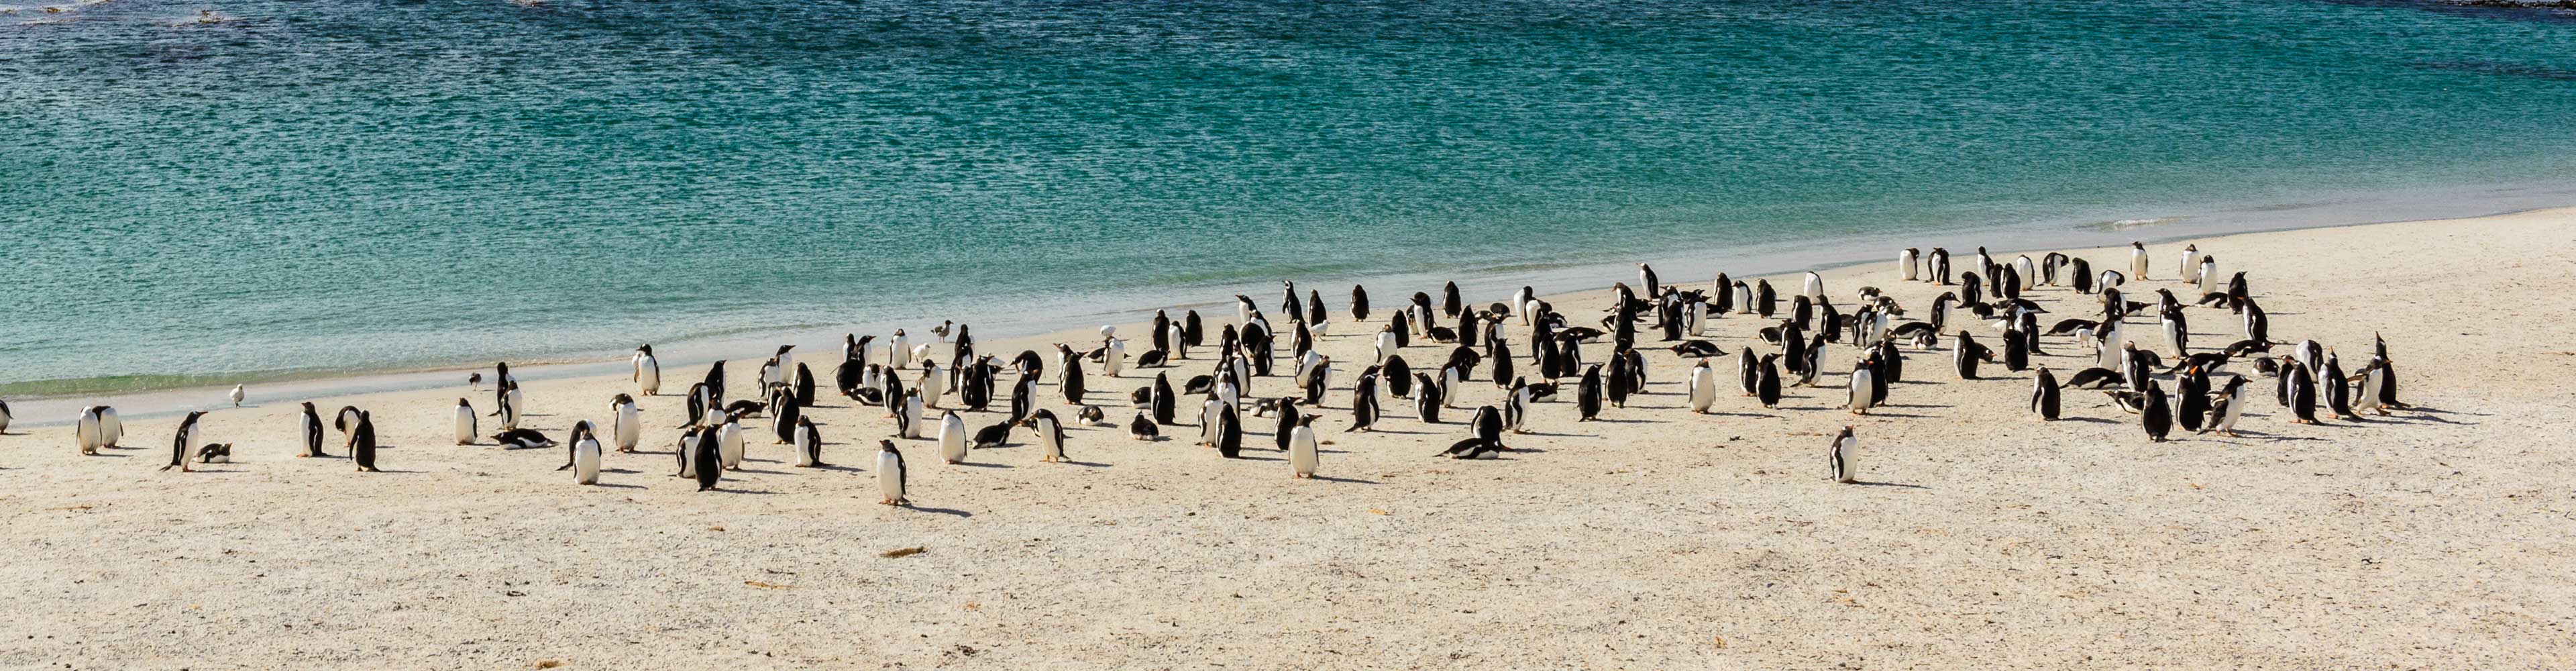 Falkland Islands Discovery 